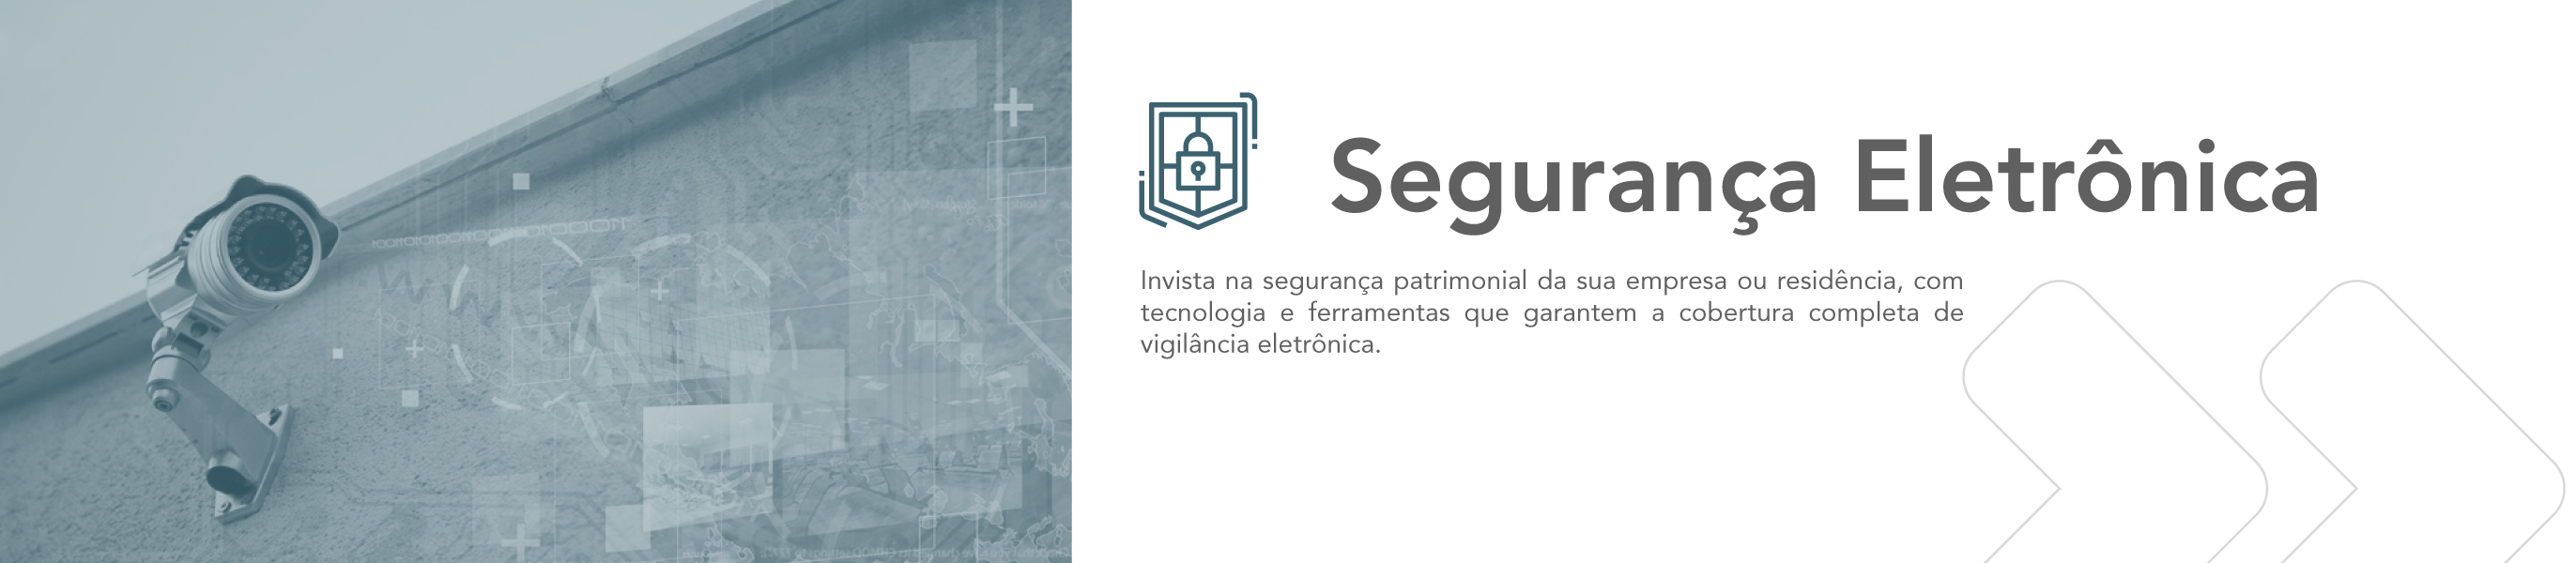 banner Seguranca eletronica